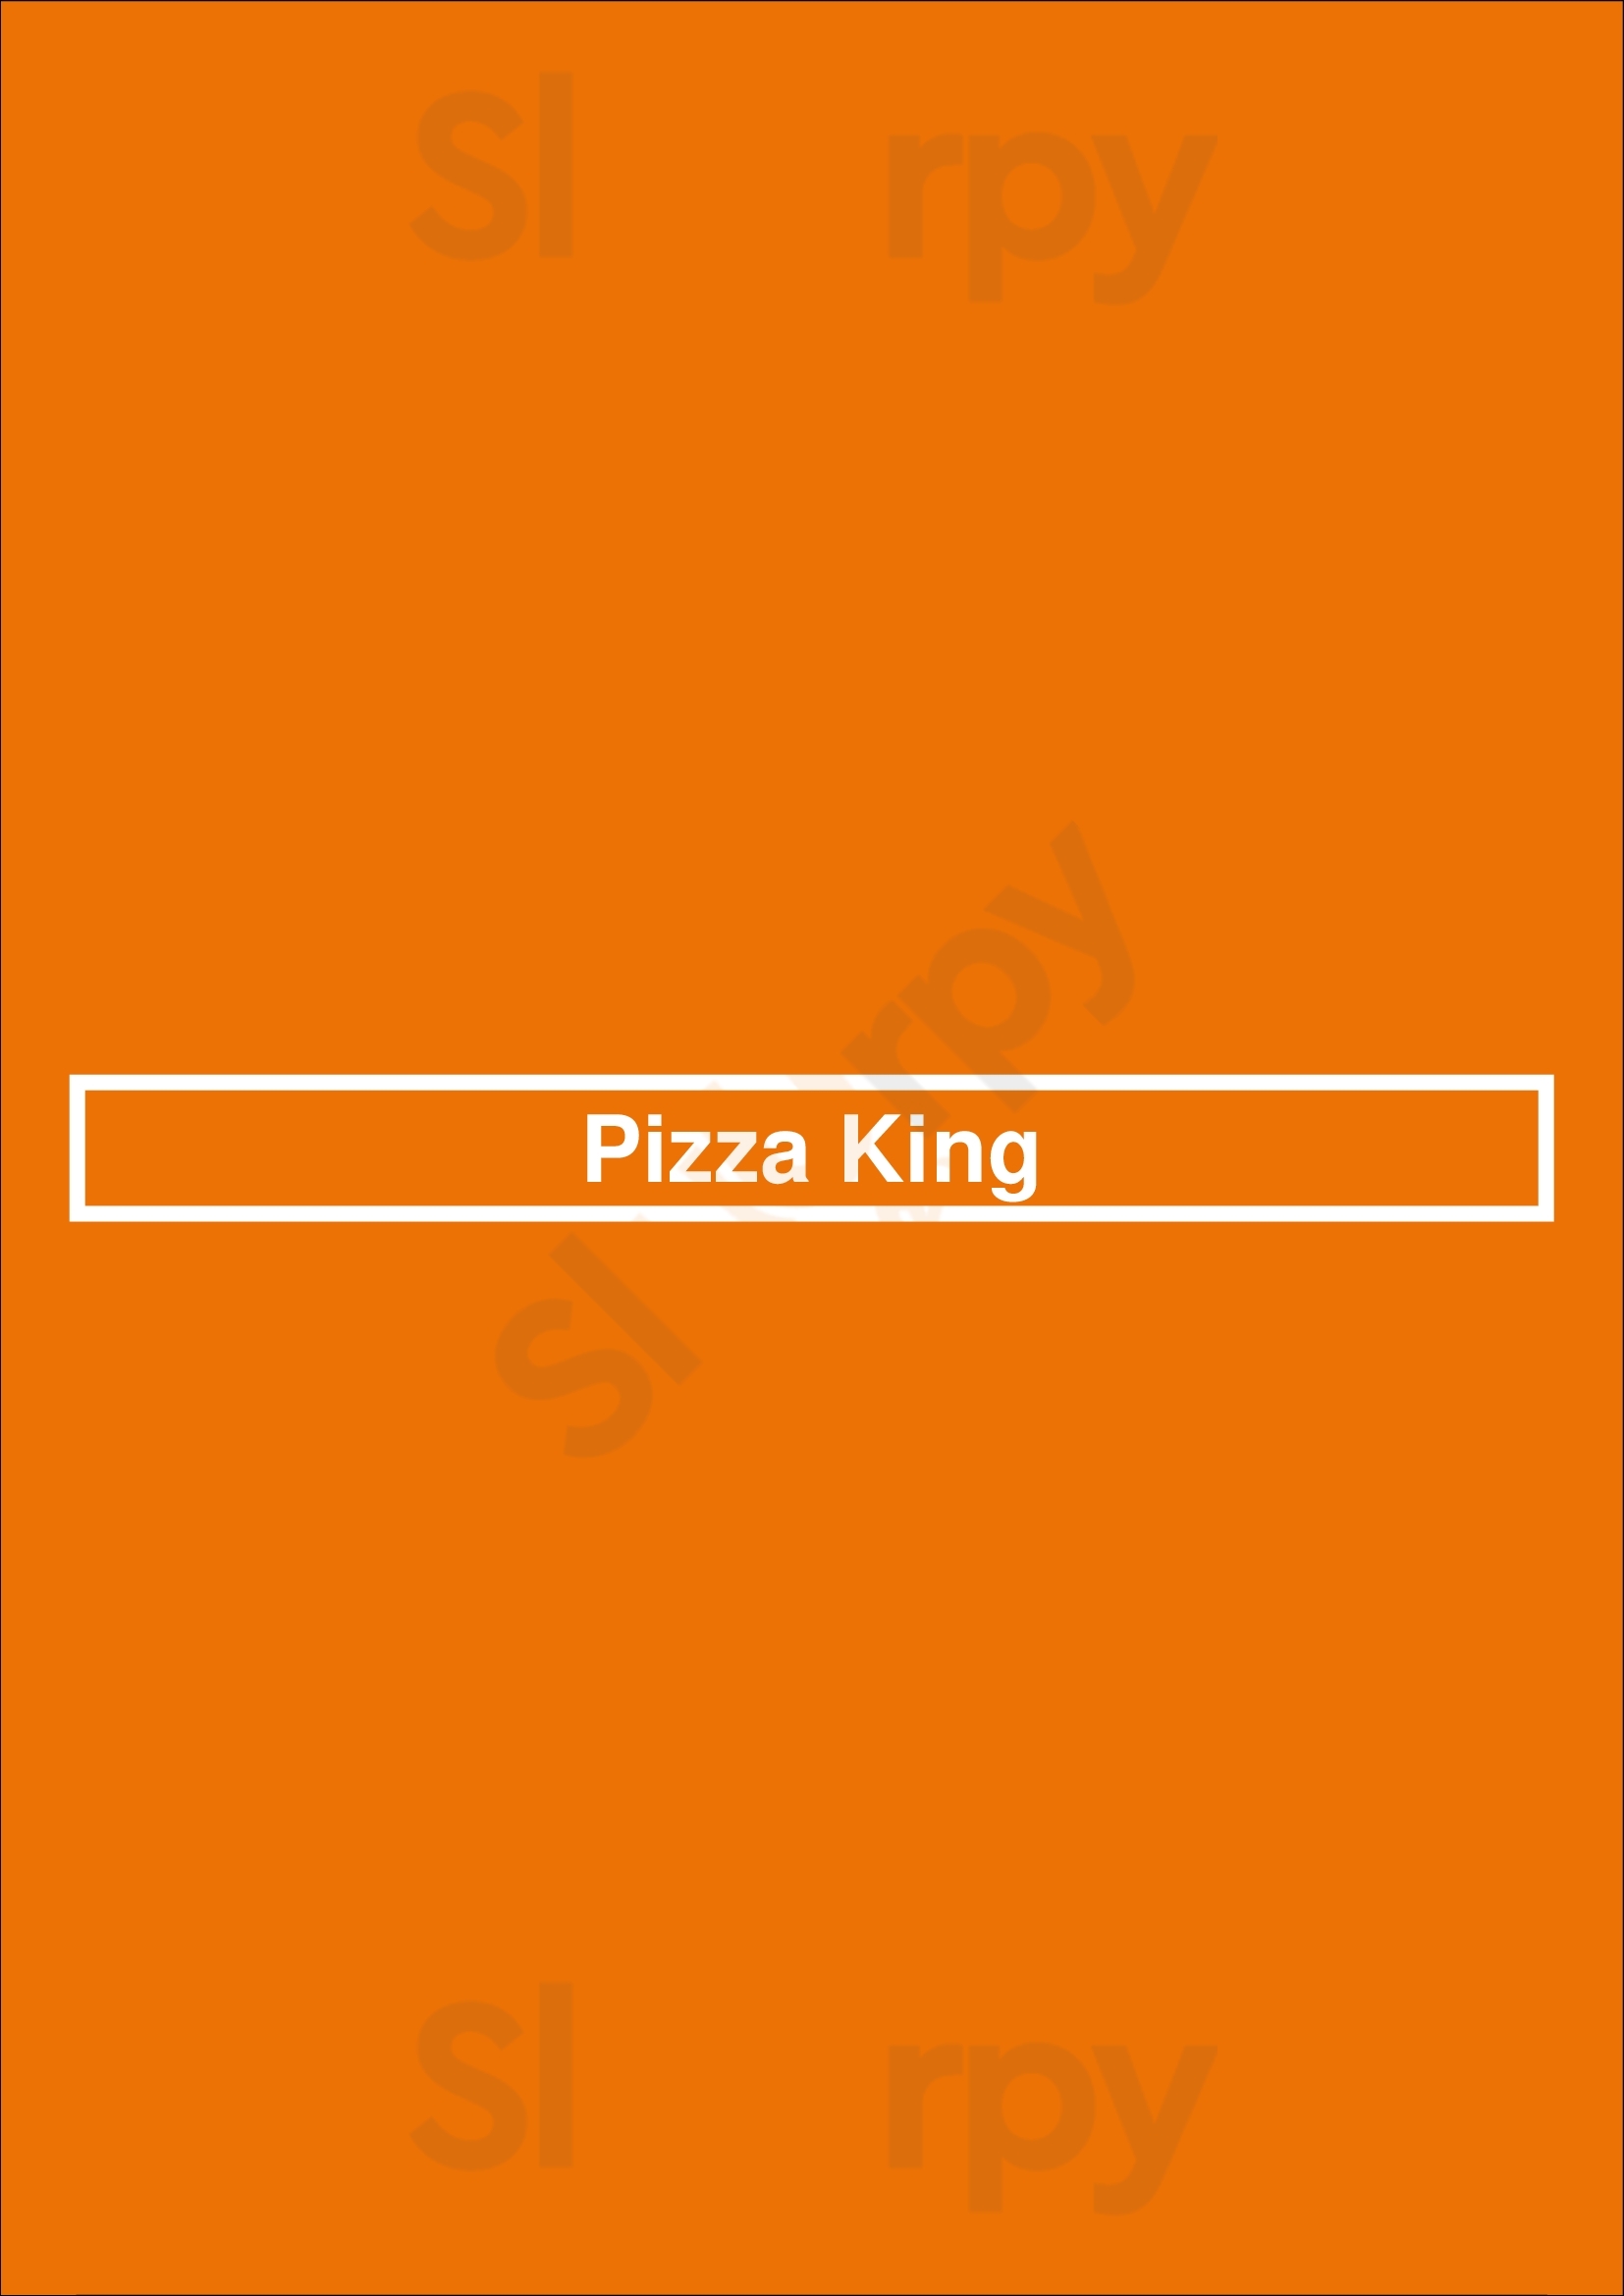 Pizza King Indianapolis Menu - 1